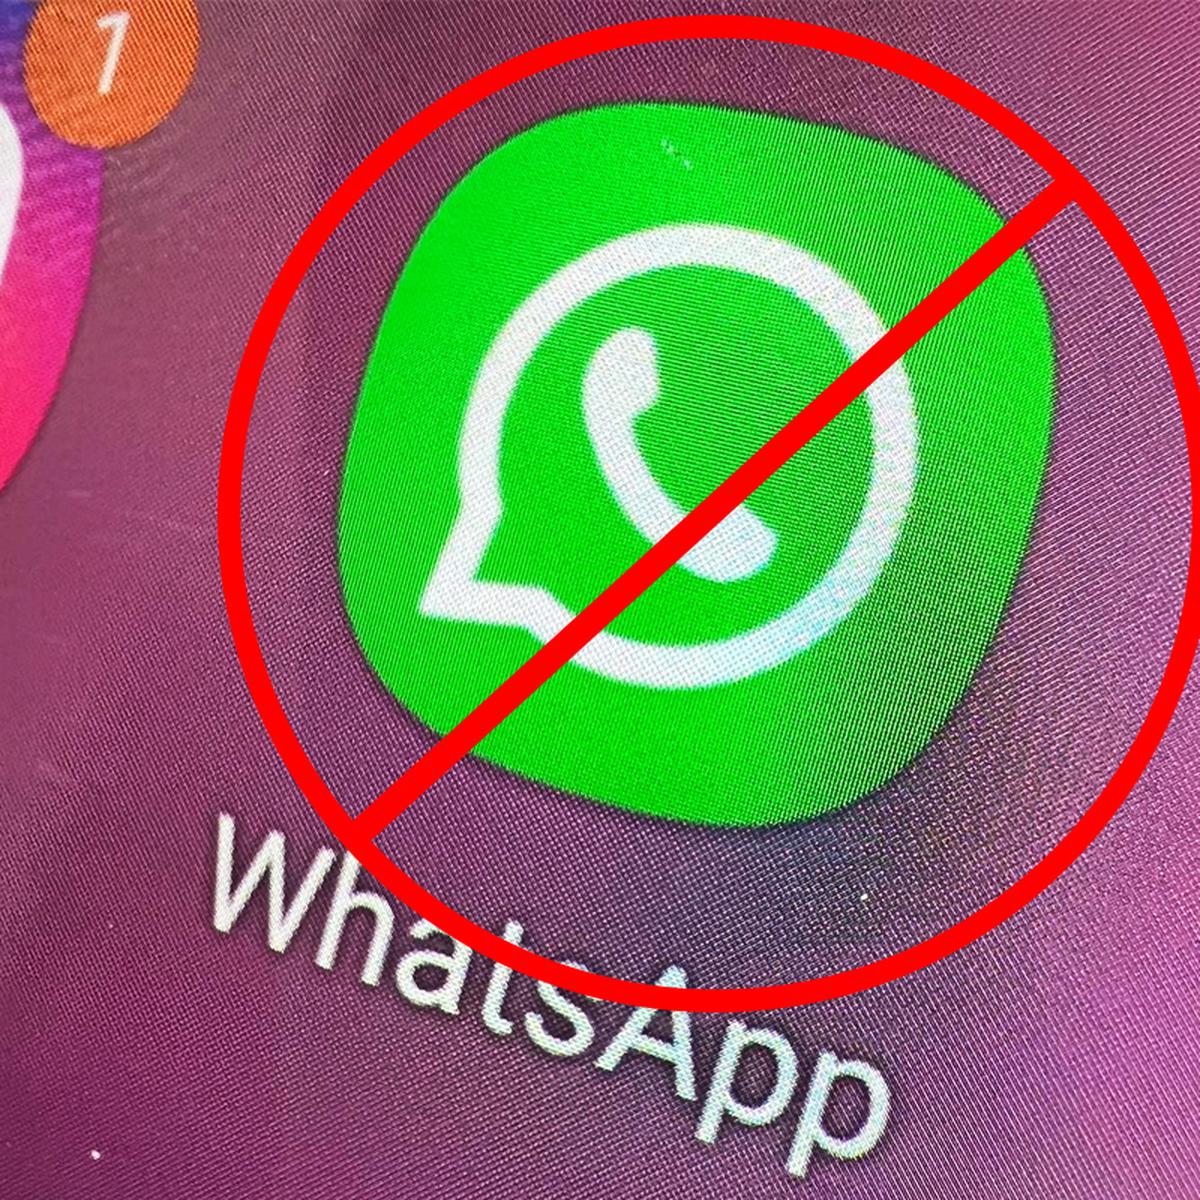 WhatsApp | Dejará de funcionar el 31 de mayo | Android | iPhone | Celulares  | Smartphone | 2022 | nnda | nnni | DATA | MAG.